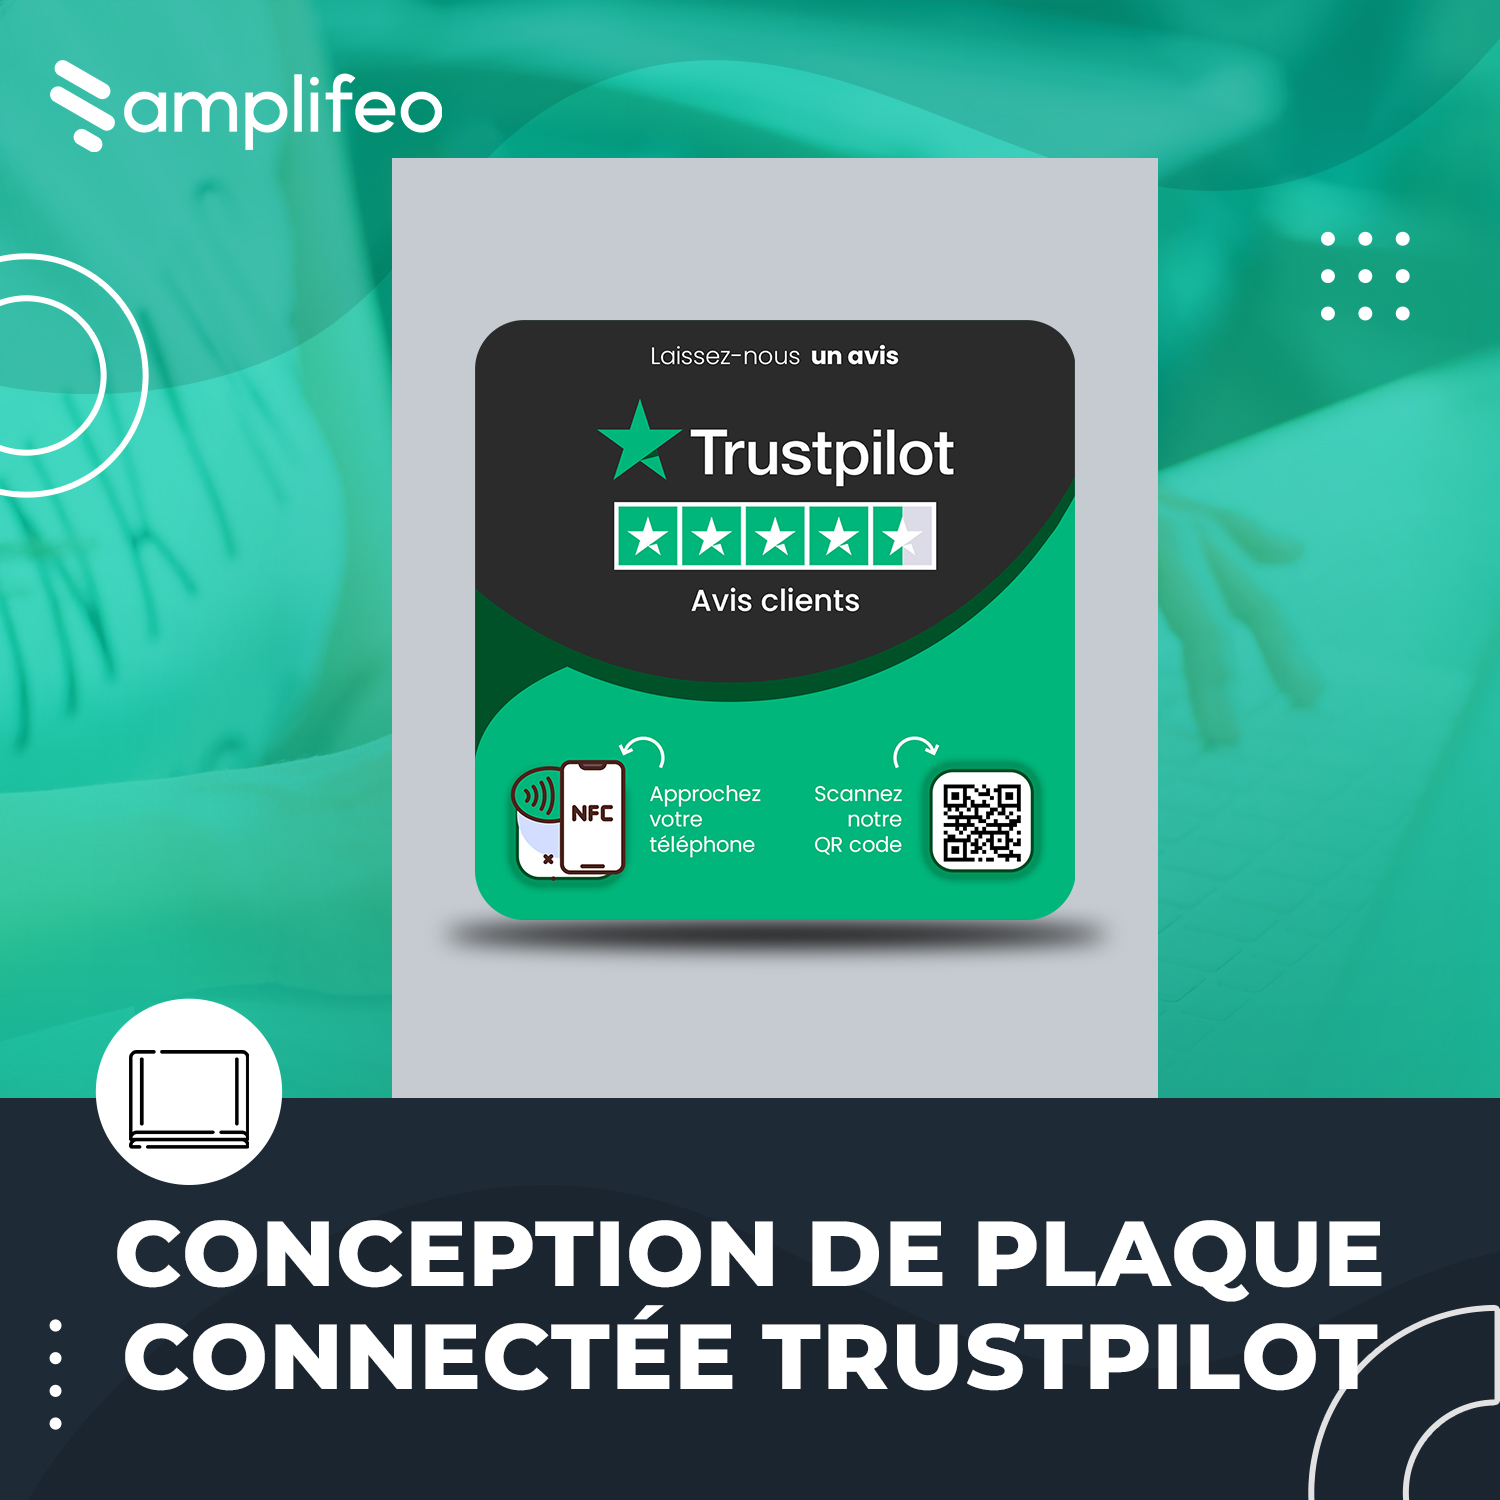 Plaque Trustpilot Avec Puce NFC & Qr Code